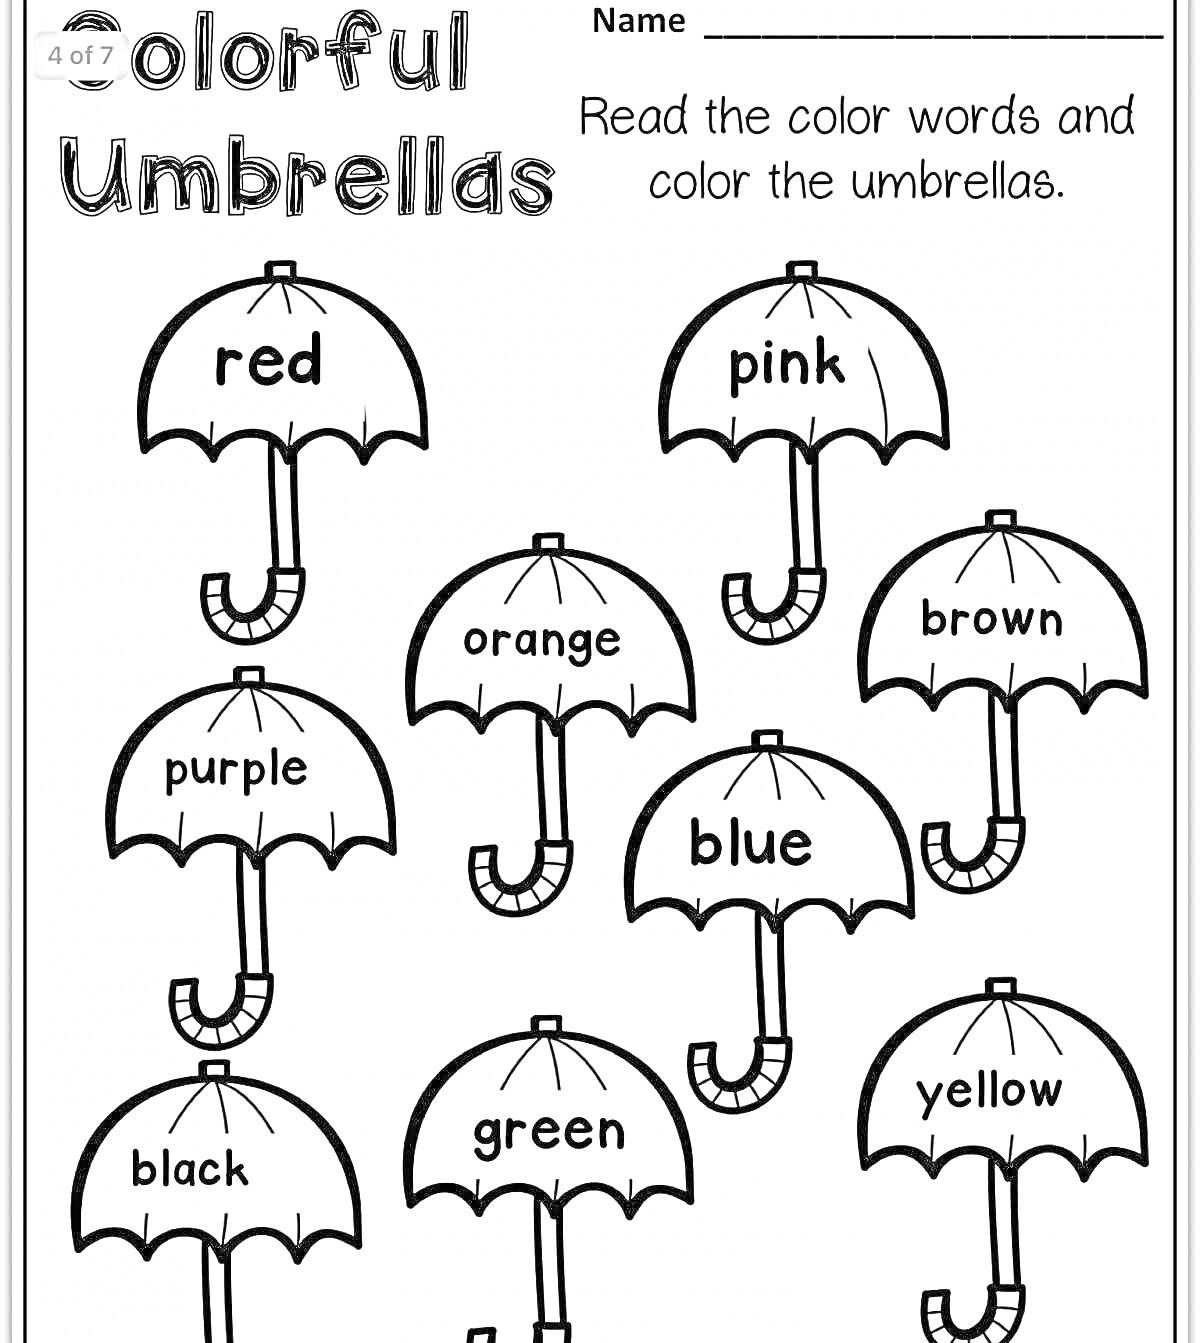 Раскраска Раскраска с различными цветами на английском языке, зонтики с пометкой цвета: красный, розовый, оранжевый, коричневый, фиолетовый, синий, черный, зеленый, желтый